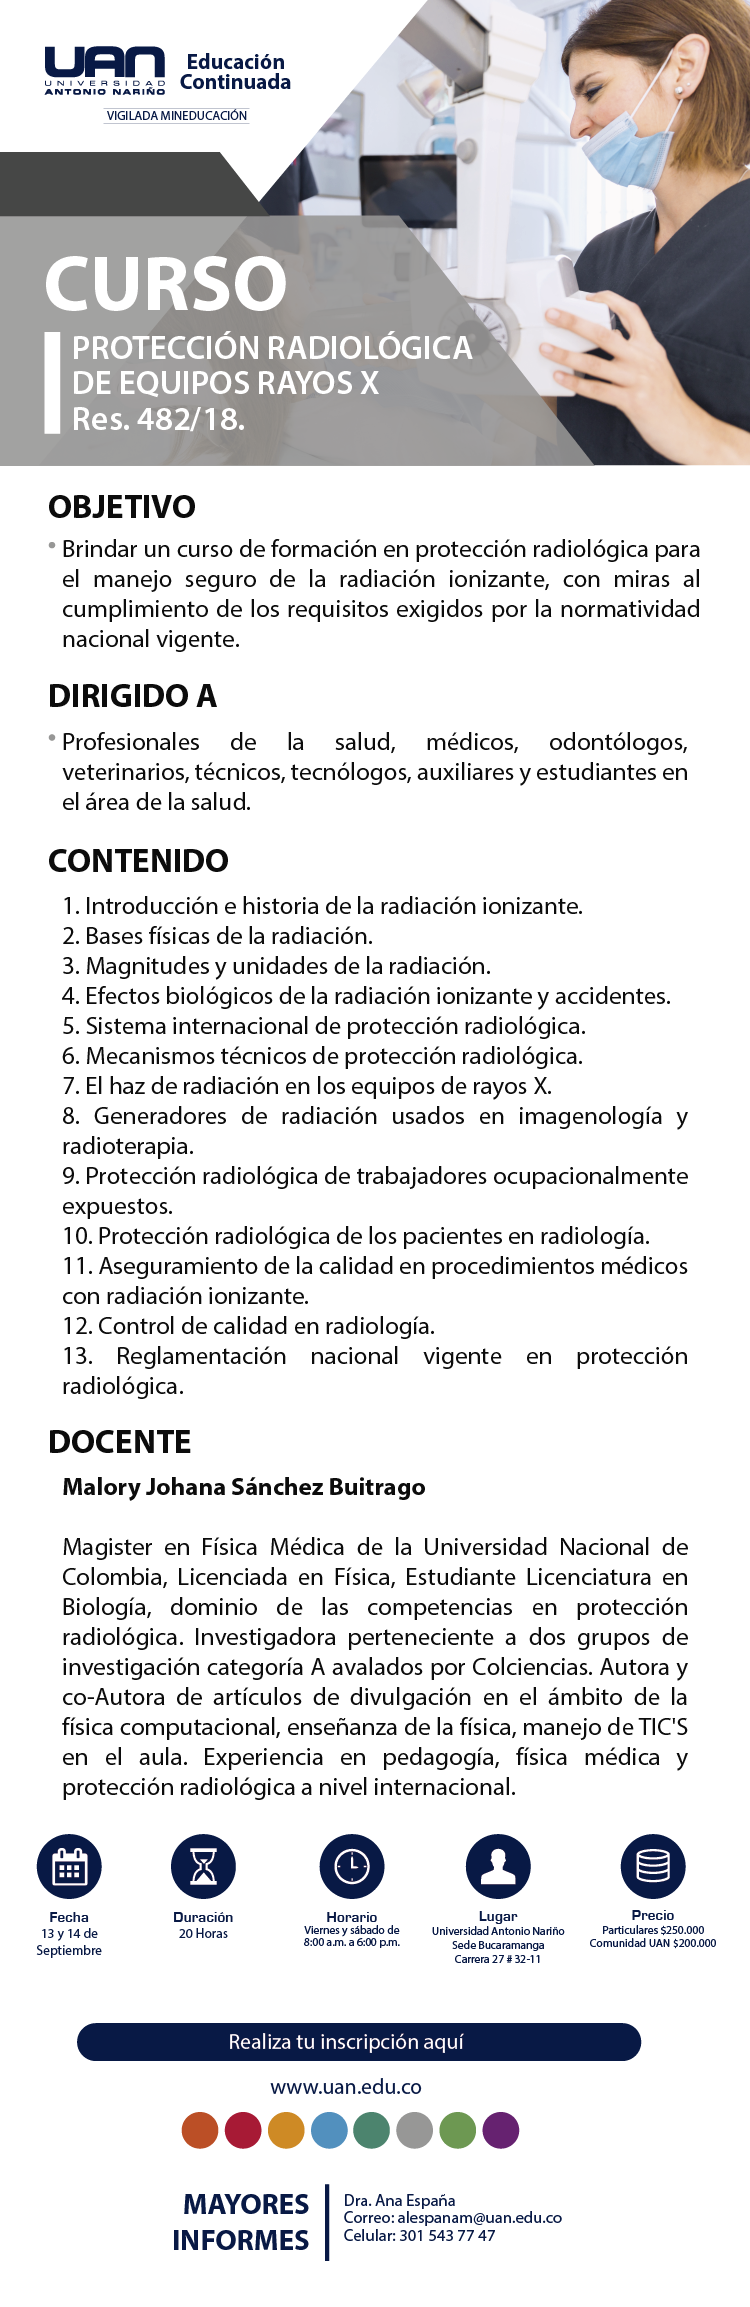 ProteccionRadiologicaEquiposRayosXRes482 18 Bucaramanga2019 M